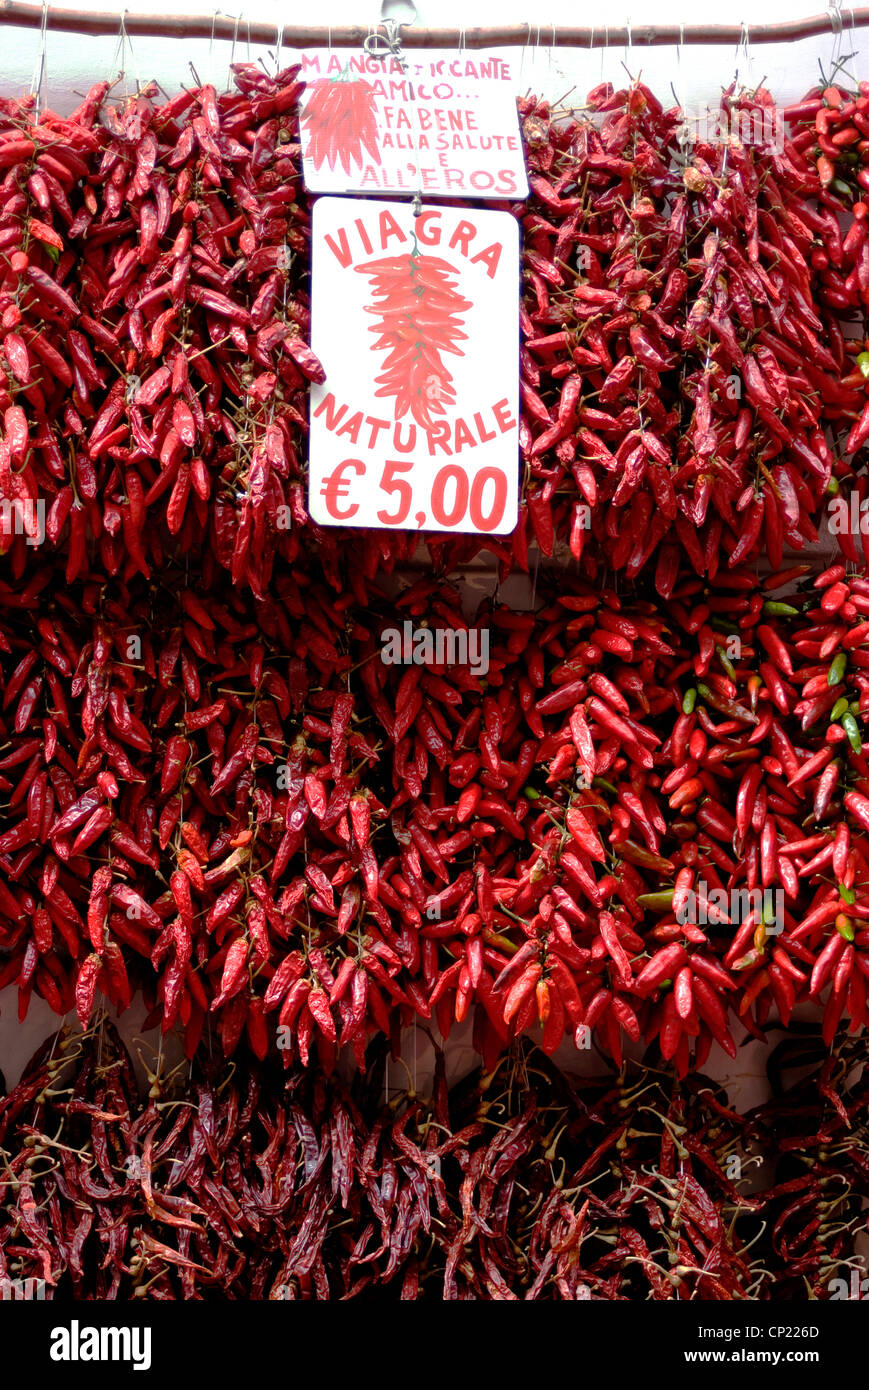 Chilis, known as the local viagra, for sale outside of a shop, Amalfi,  Amalfi Coast, Campania, Italy Stock Photo - Alamy